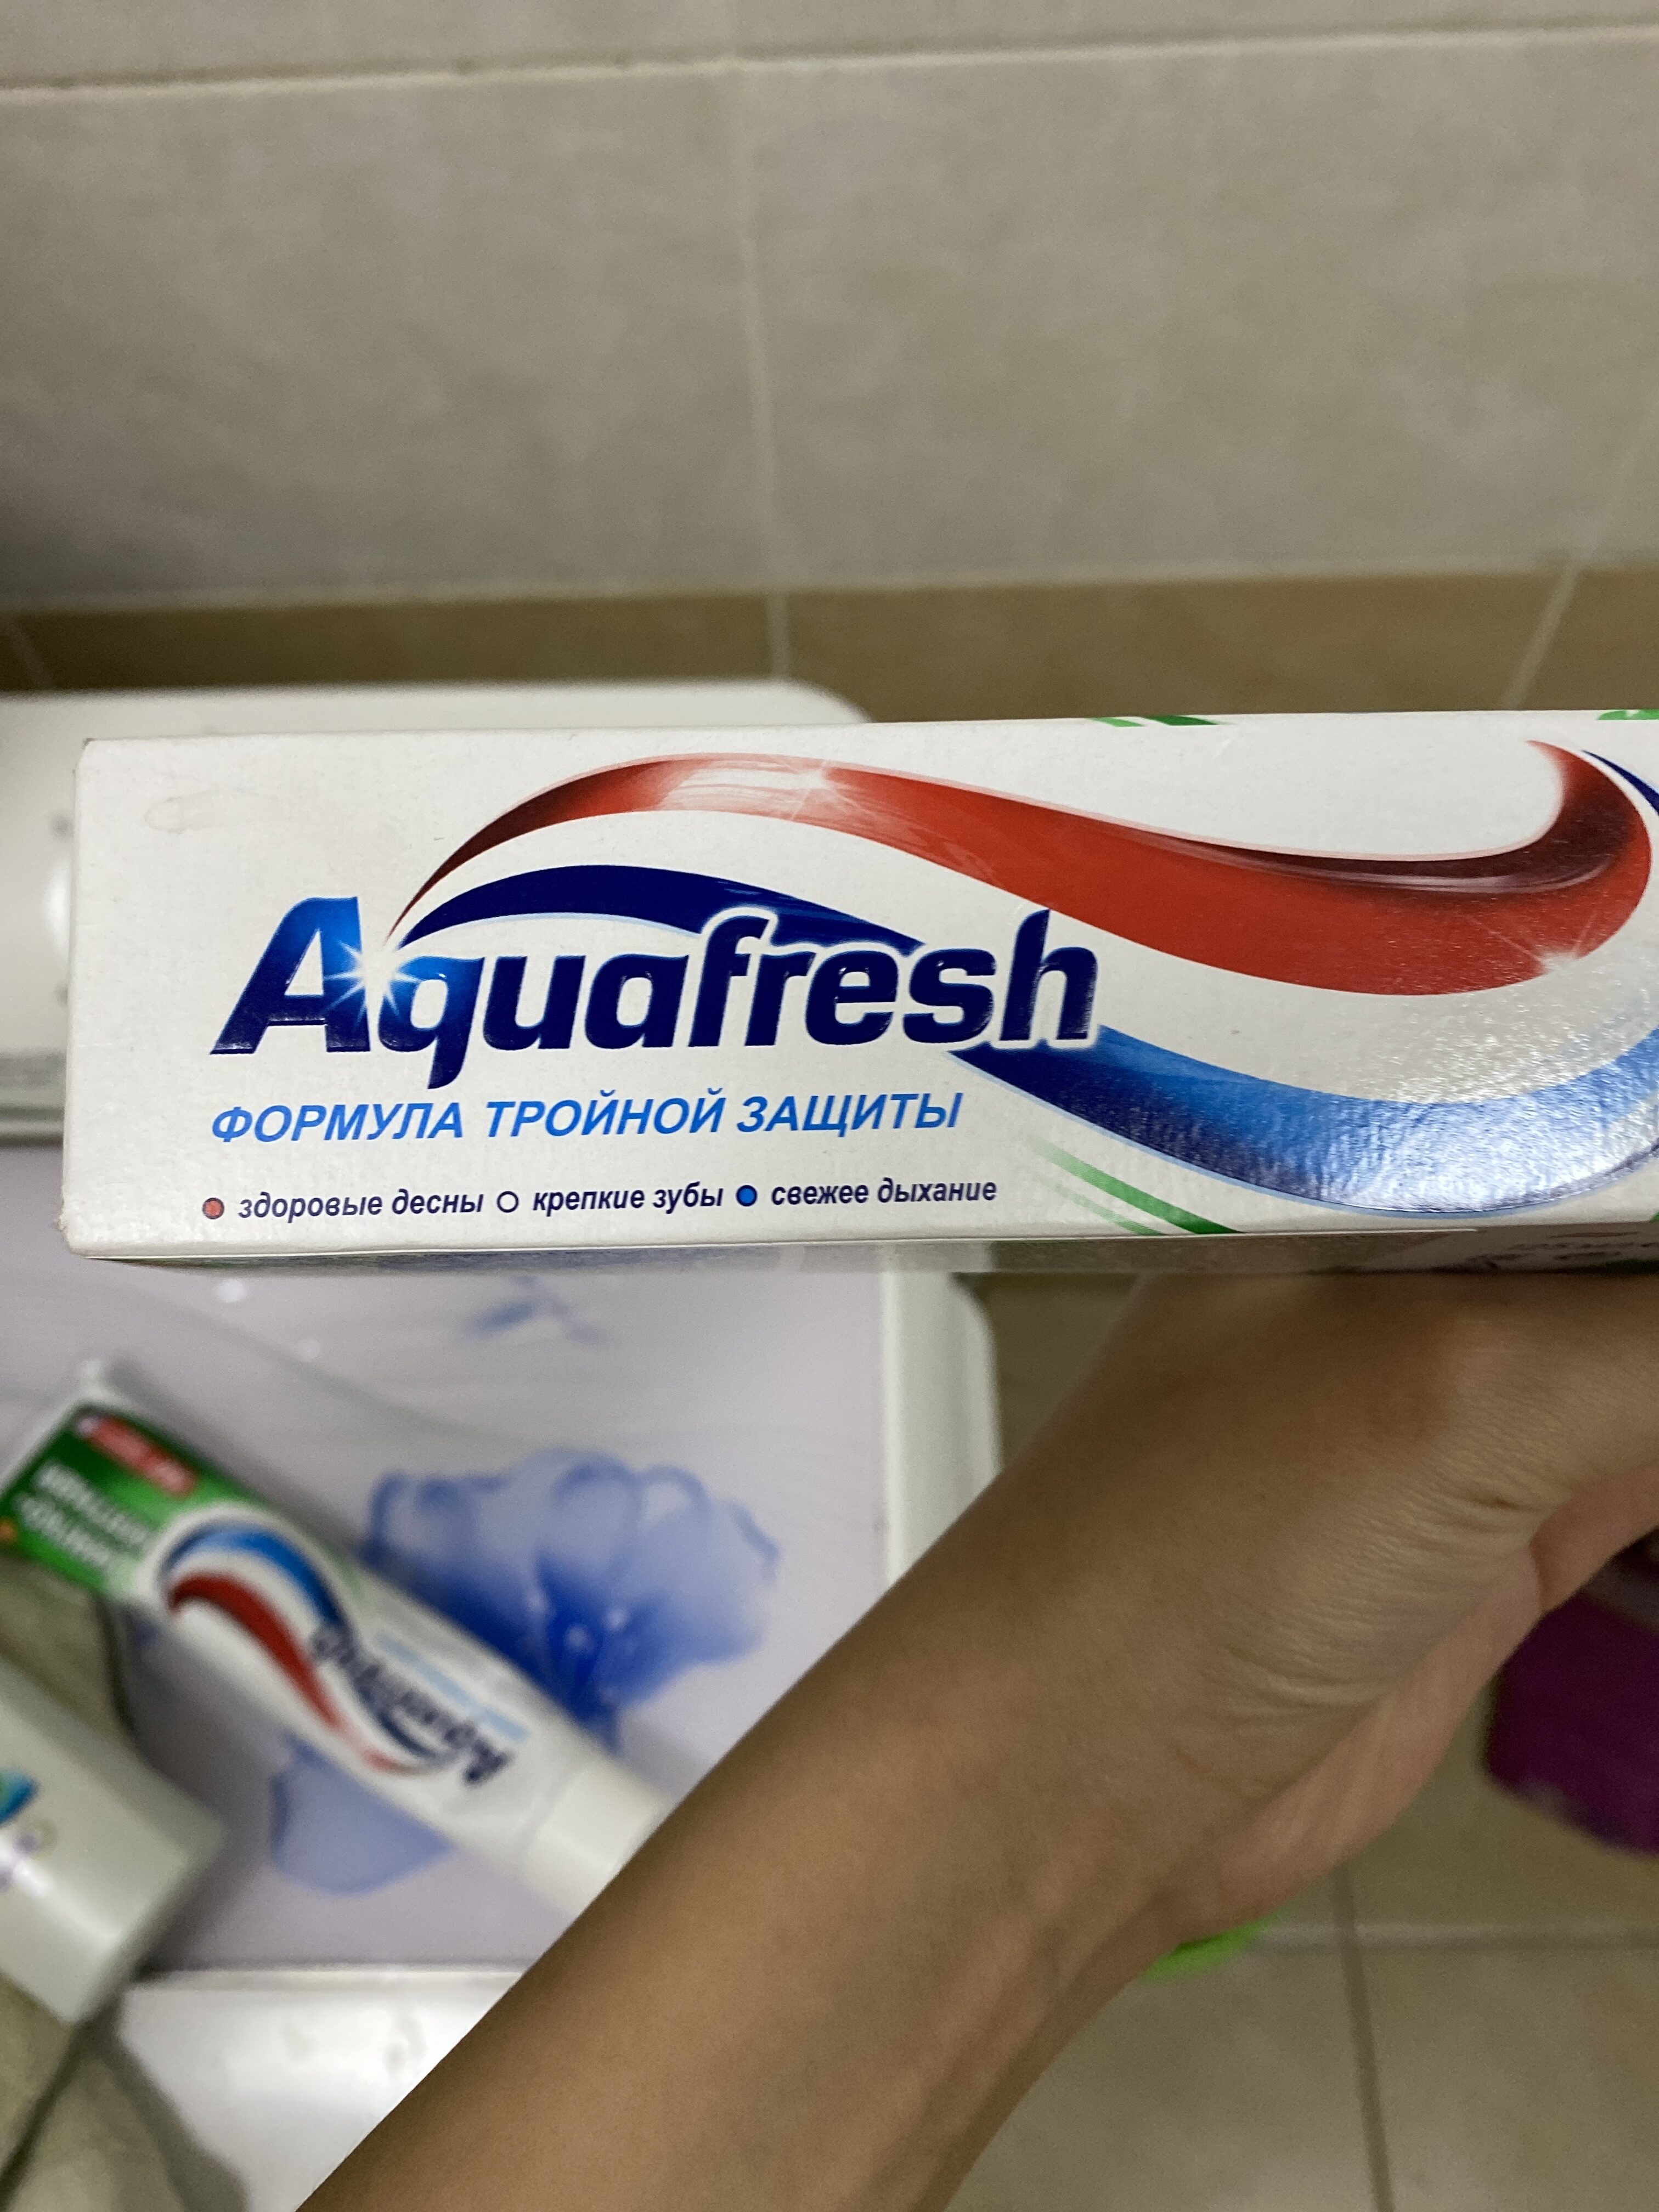 aquafresh - Produkt - en